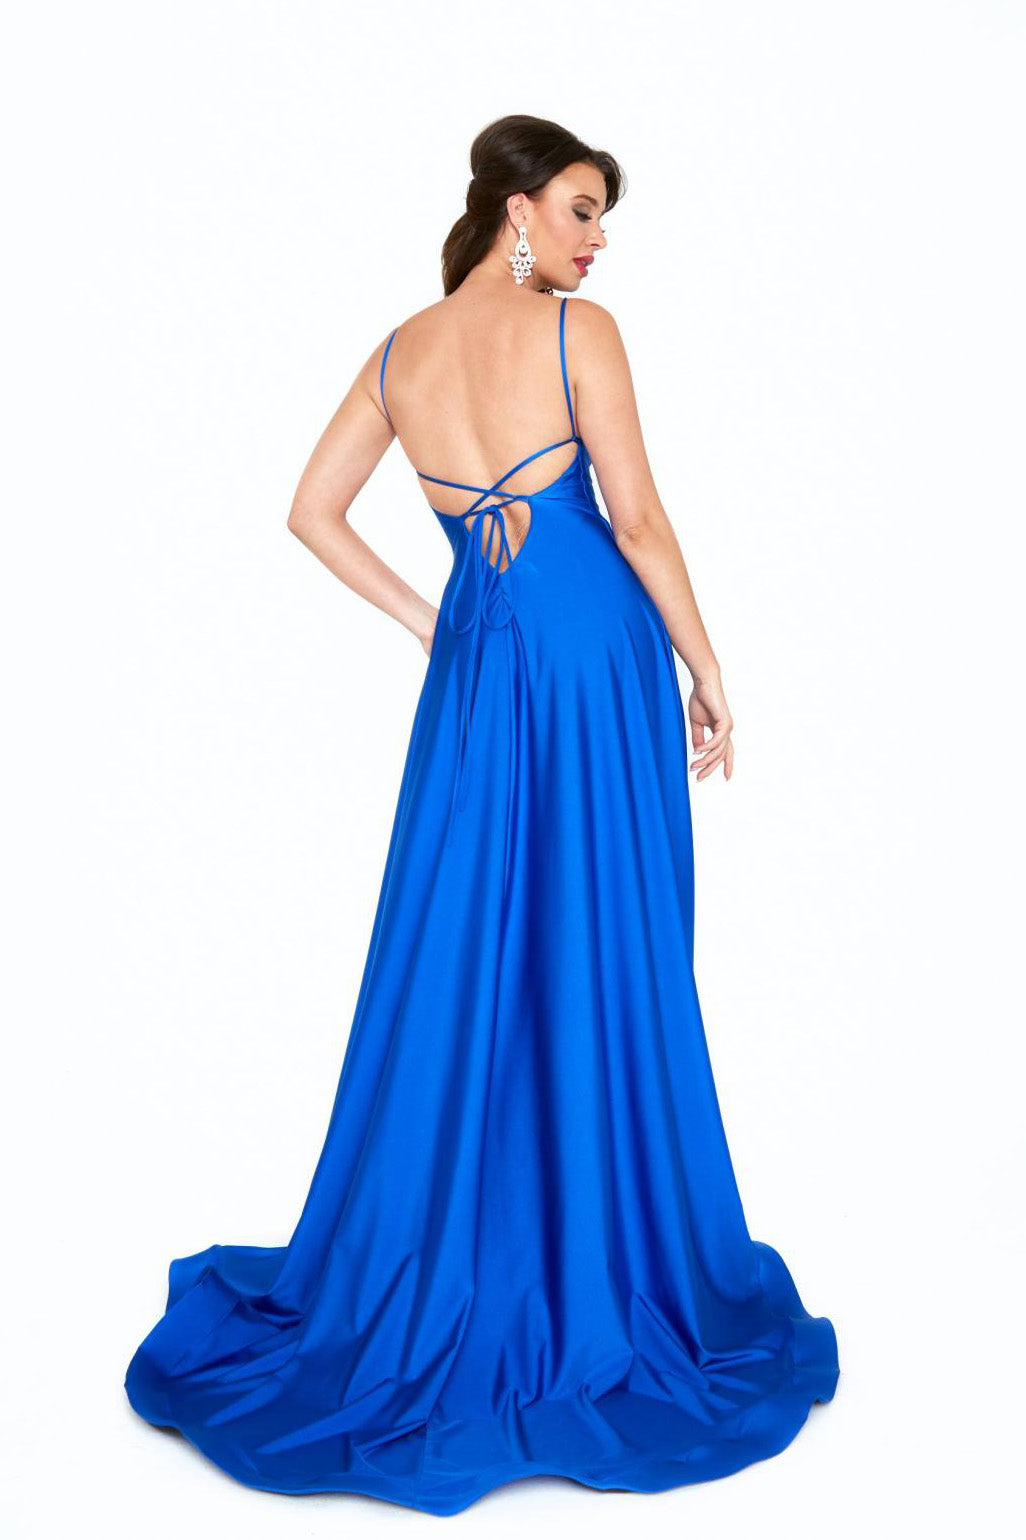 Atria 6521 royal blue prom dress